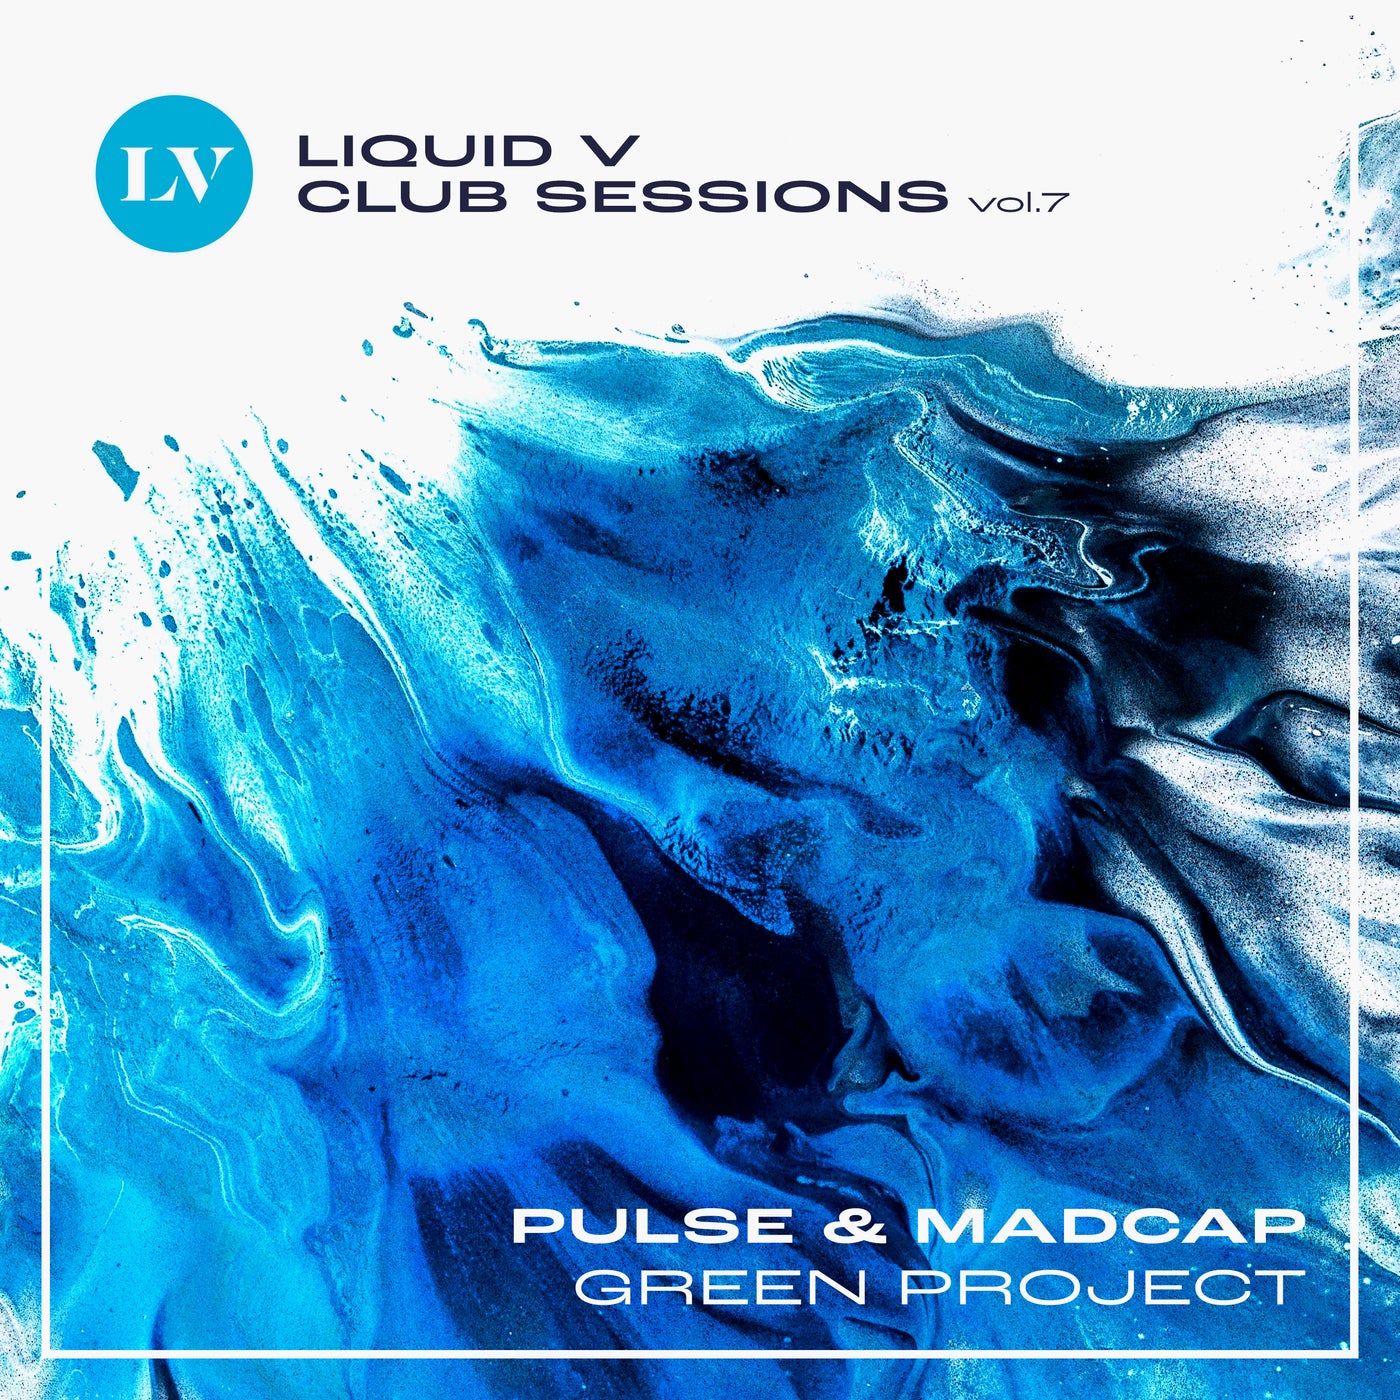 Green Project (Liquid V Club Sessions, Vol. 7)